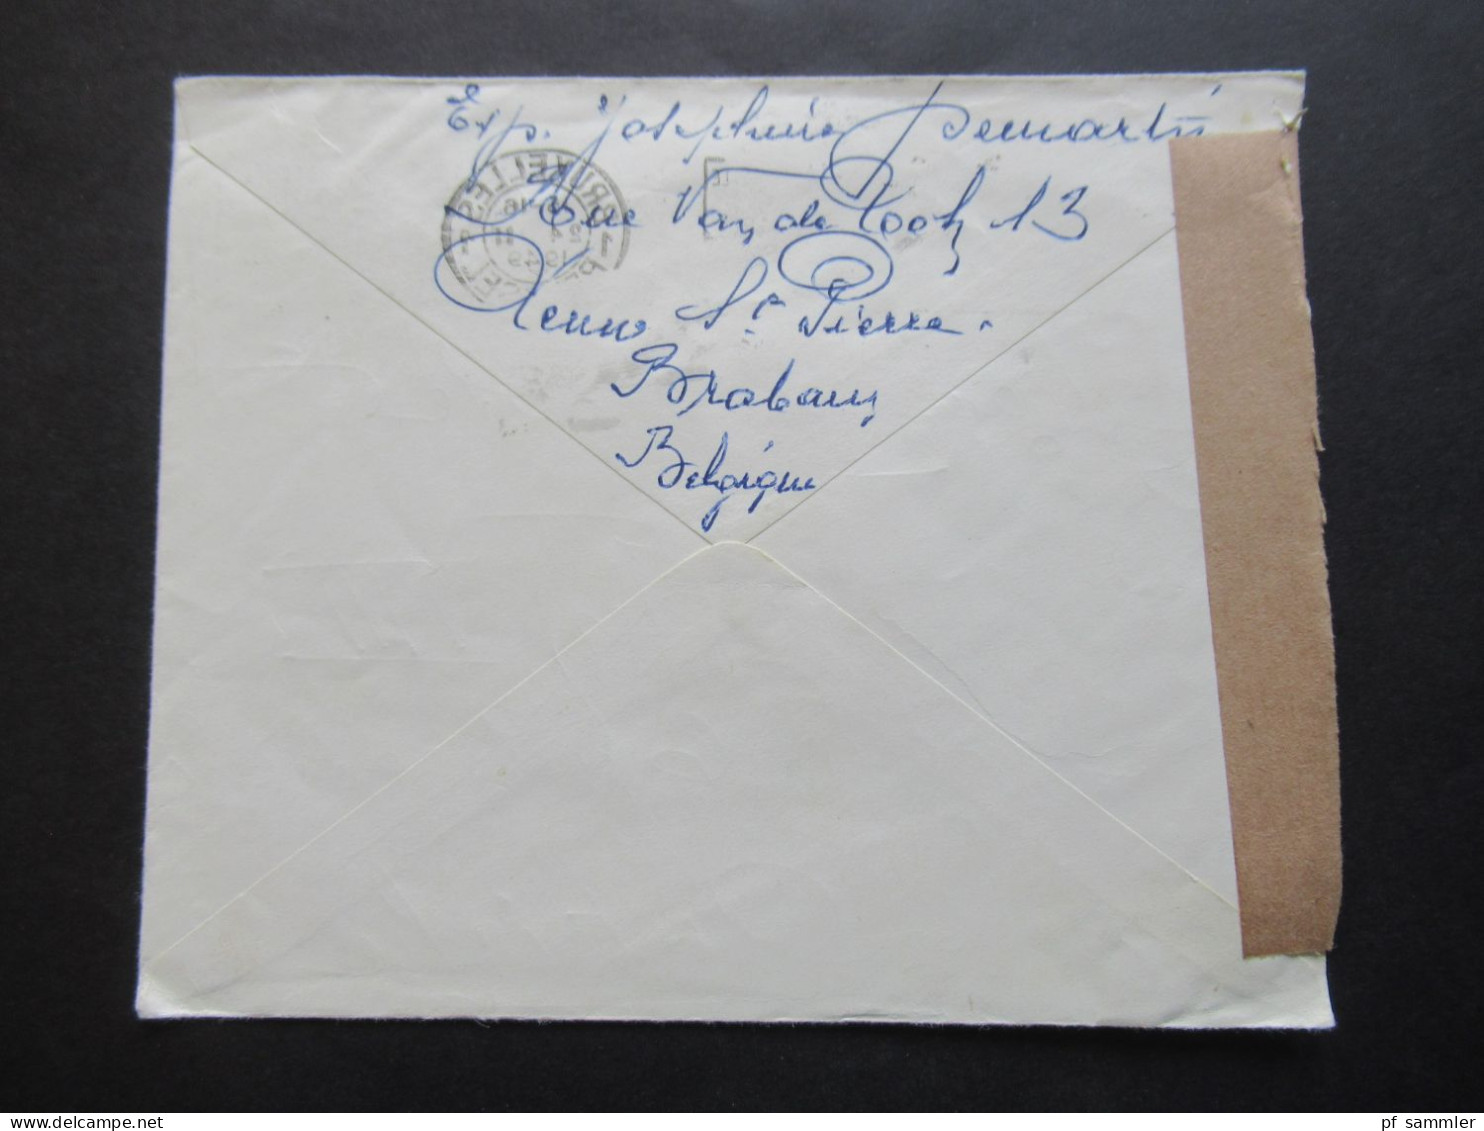 Belgien 1949 Auslandsbrief Nach Wien Zensurbeleg / Stempel Österrereichische Zensurstelle 180 Und Violetter Stempel V - Briefe U. Dokumente